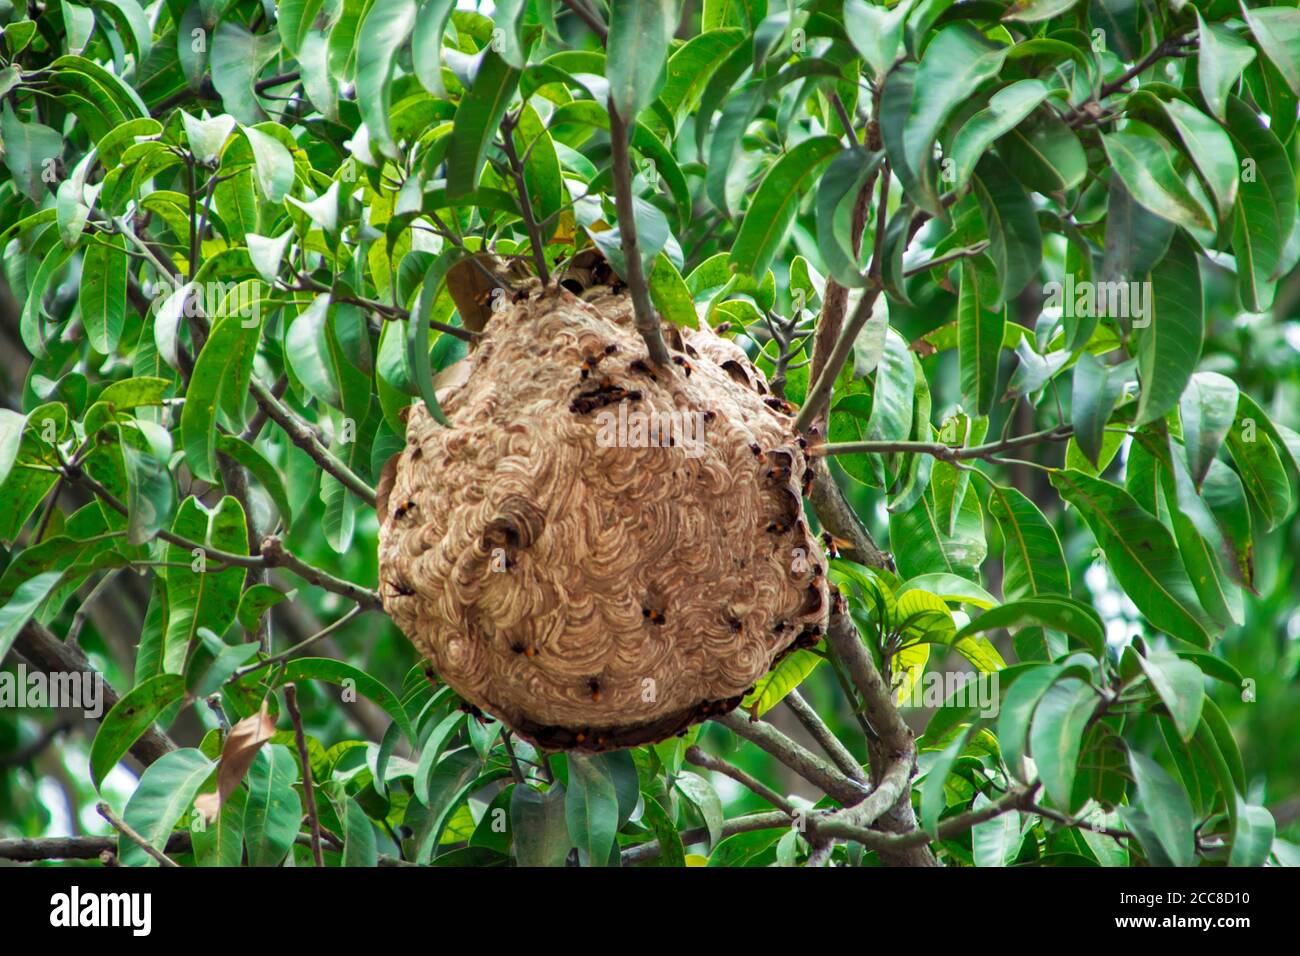 C'est une image du nid vimrul ou de la maison vimrul en haut de l'arbre Banque D'Images